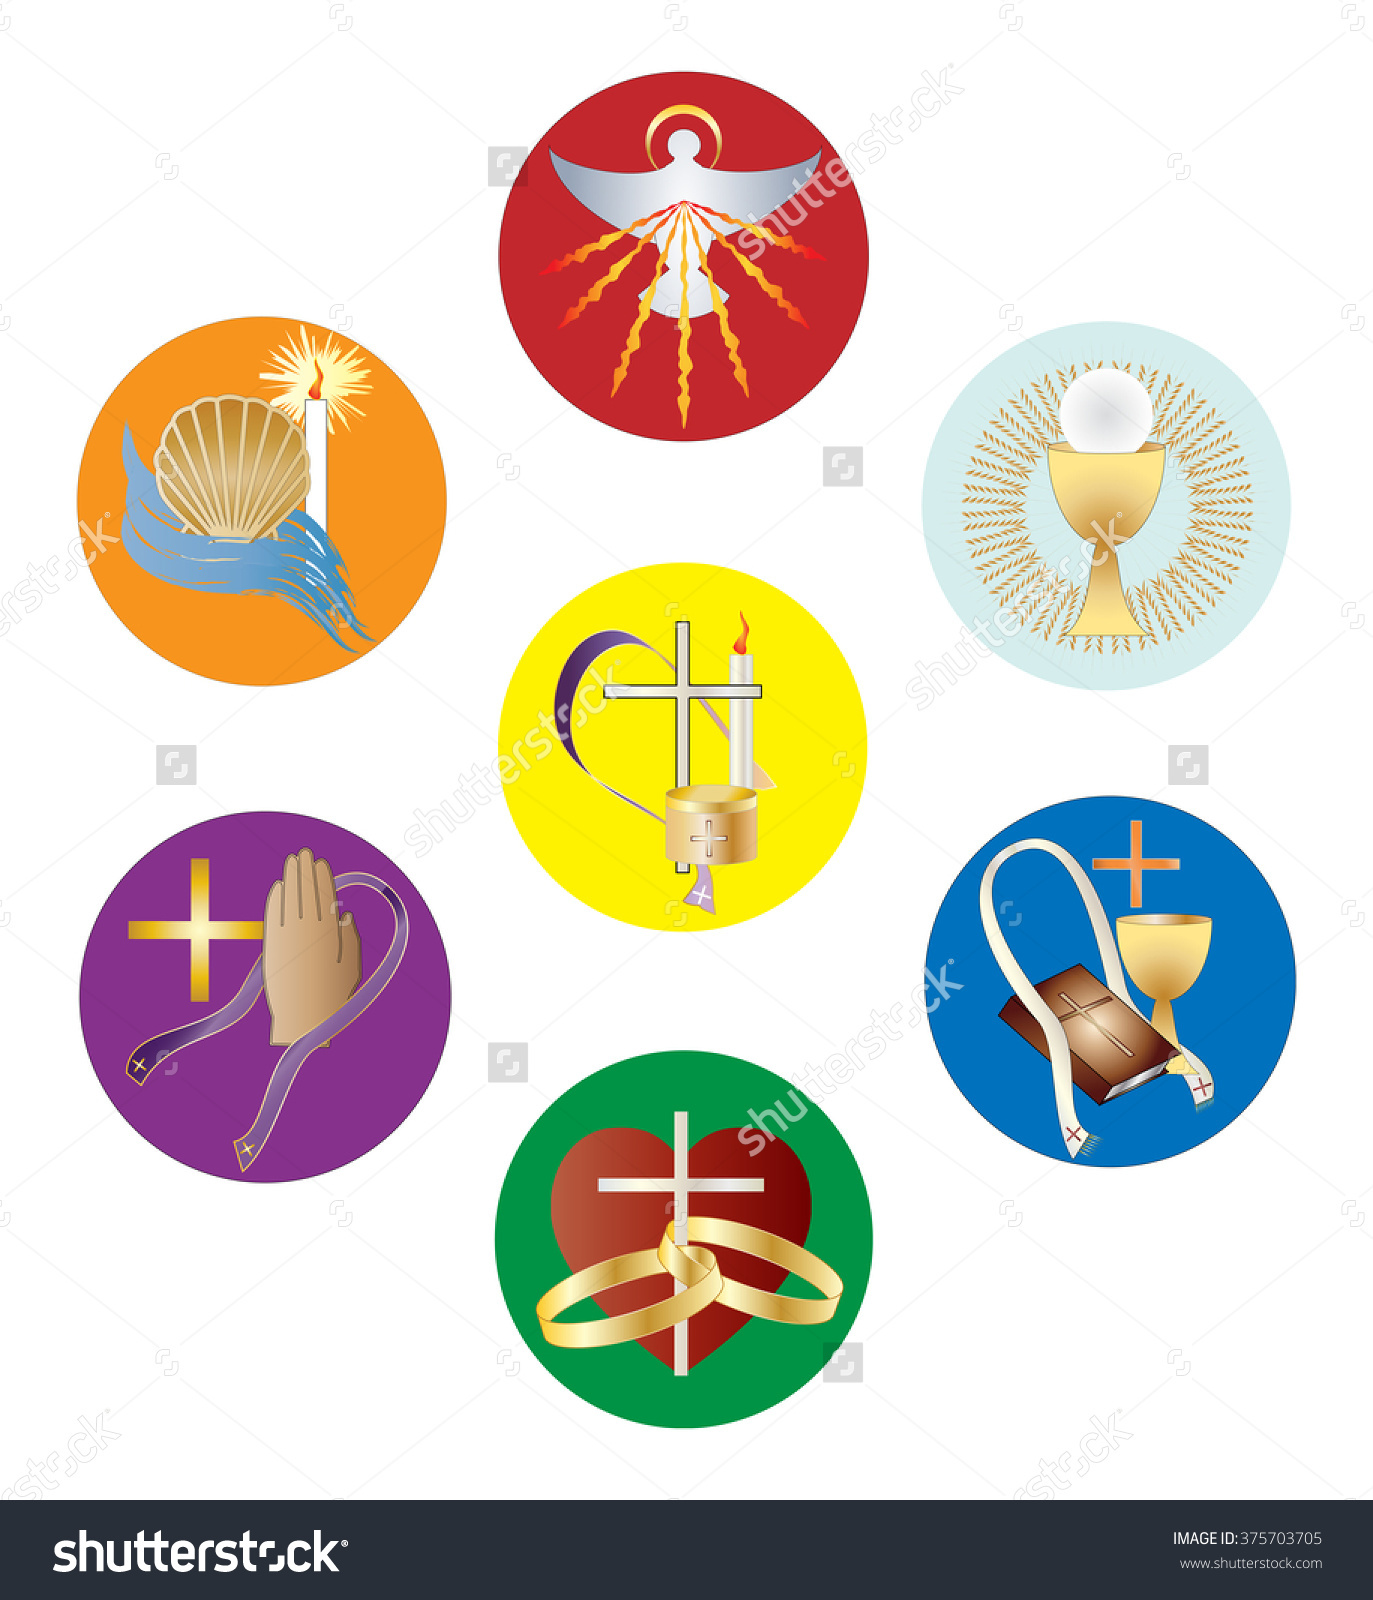 The 7 Sacraments Symbols